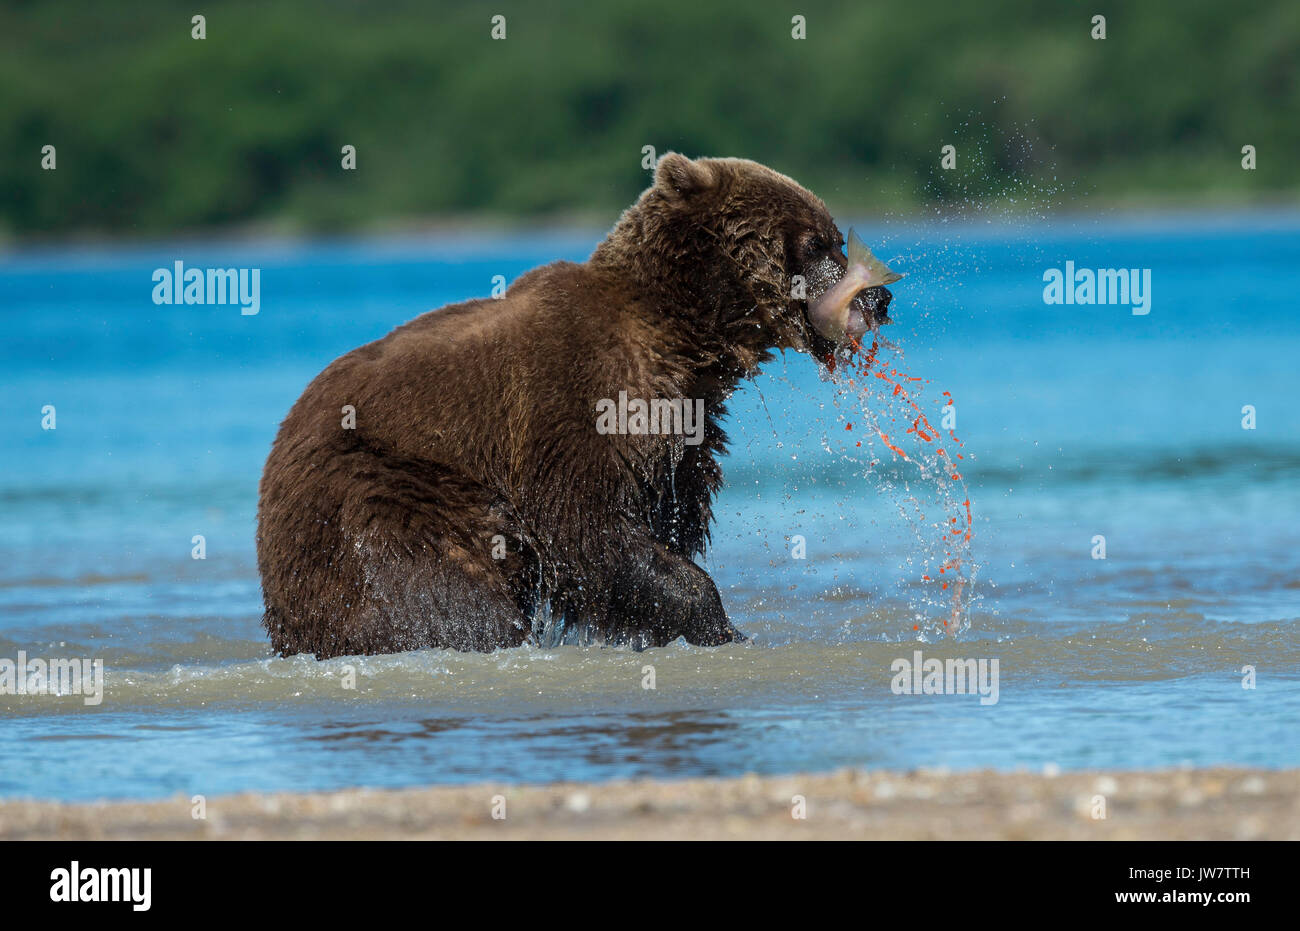 Fischrogen spritzt aus einem sockeye Lachse, wie es durch einen braunen Bären, Kamtschatka, Russland gegessen wird. Stockfoto